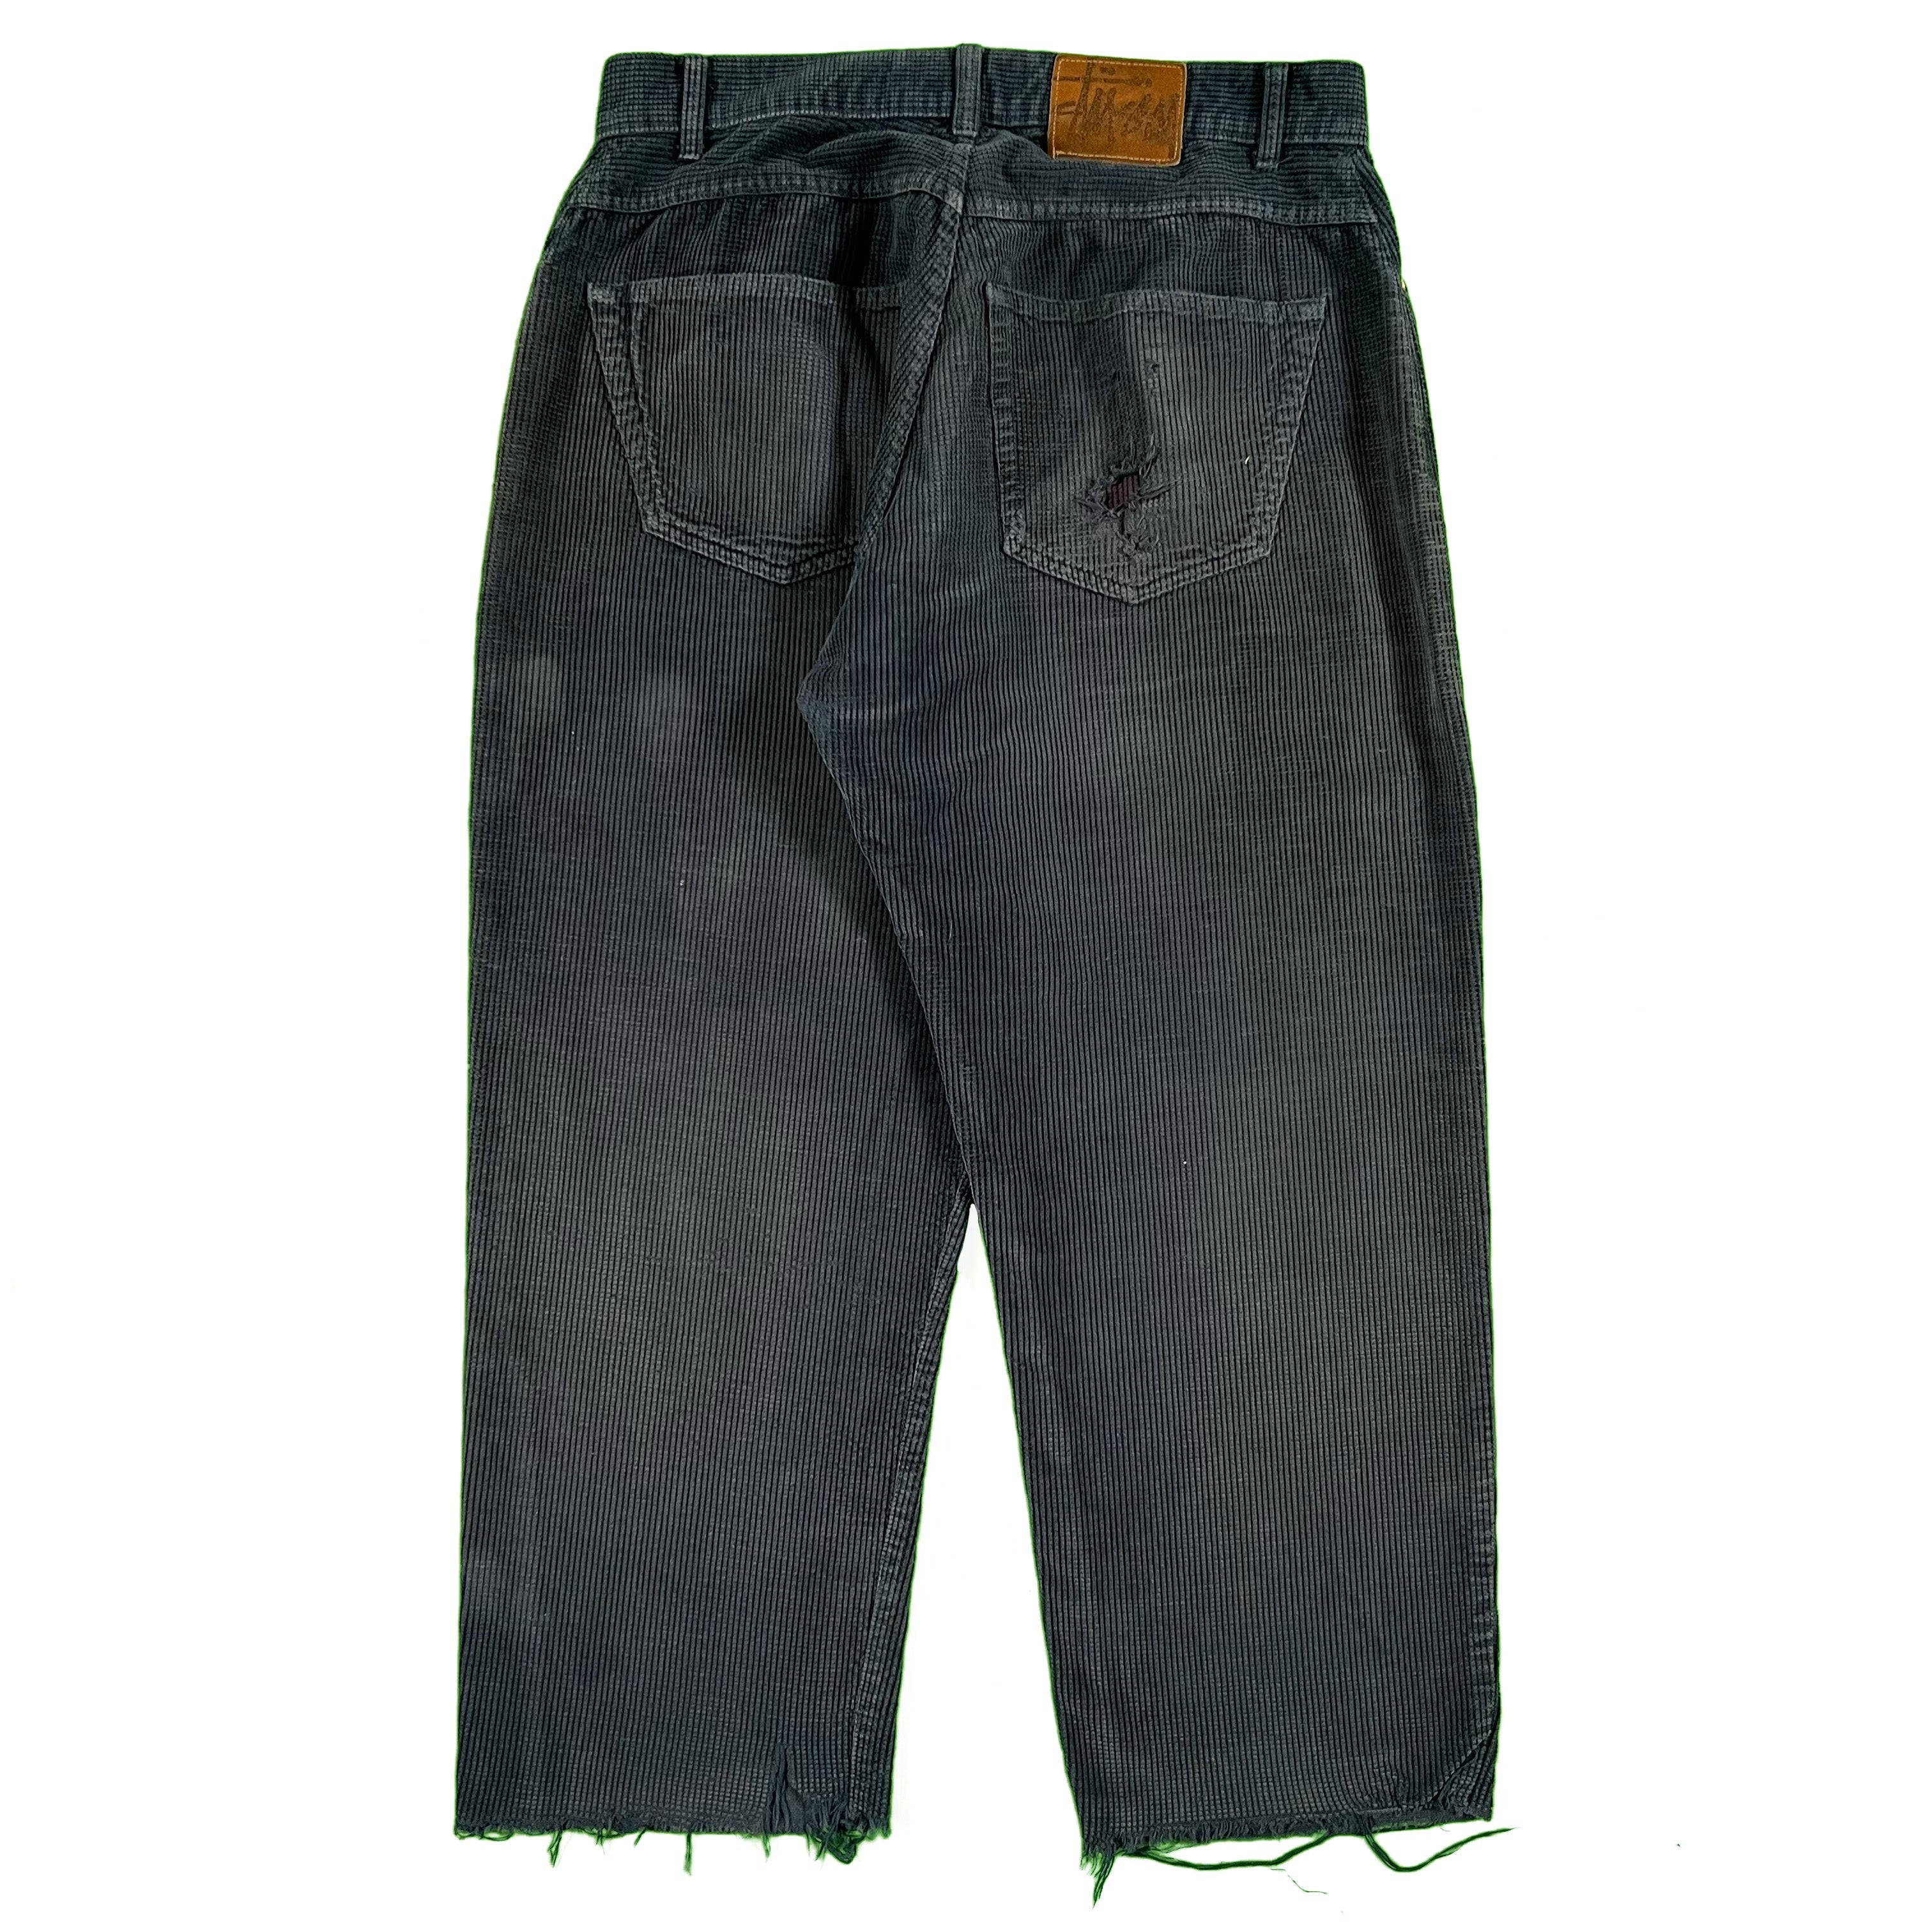 90s Stüssy Corduroy Pants- 32x26.5 – Plum Garments